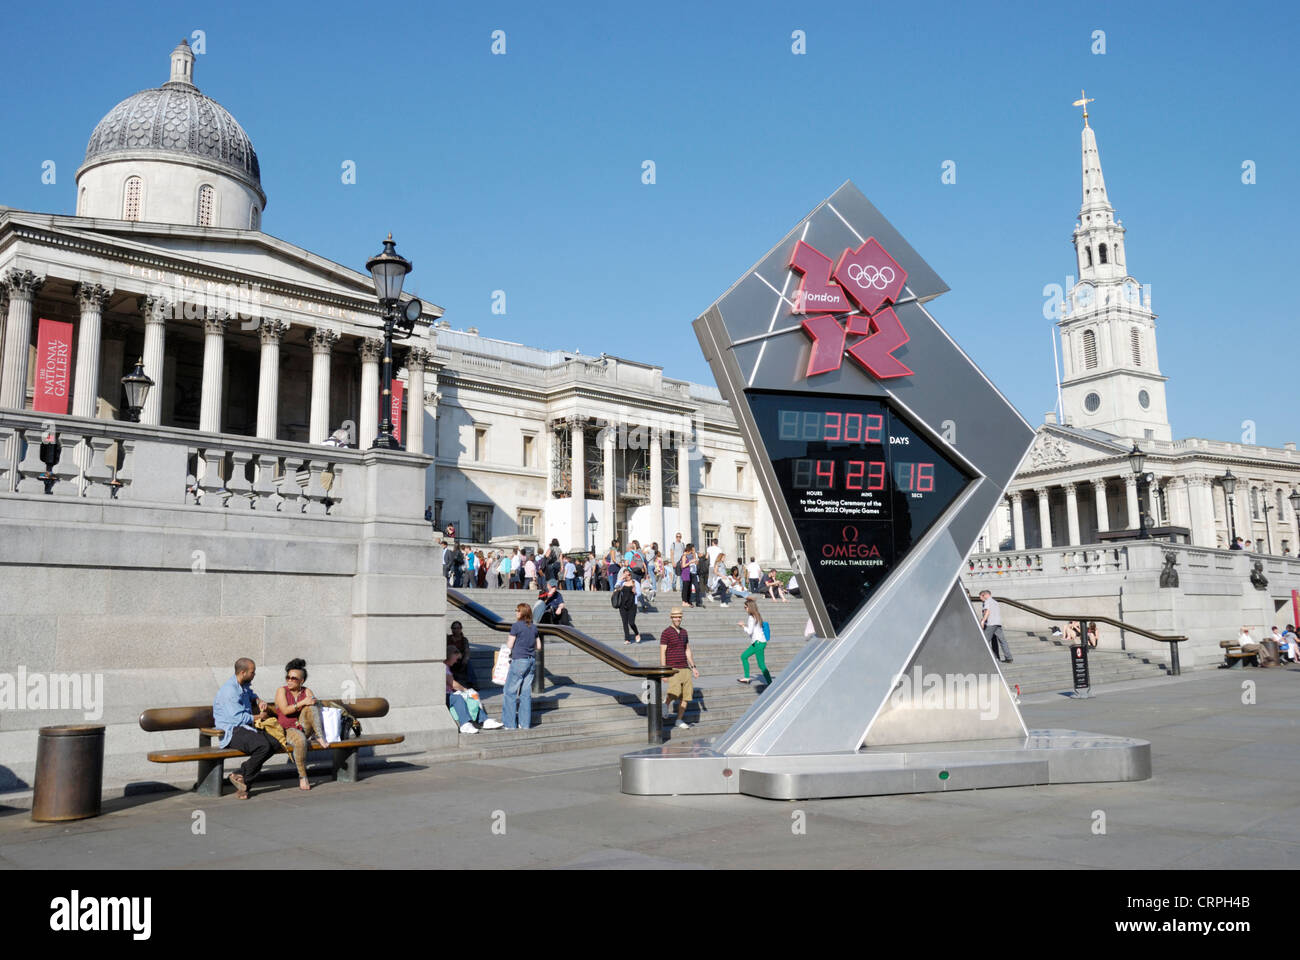 Jeux Olympiques Londres 2012 horloge de compte à rebours à Trafalgar Square. Banque D'Images